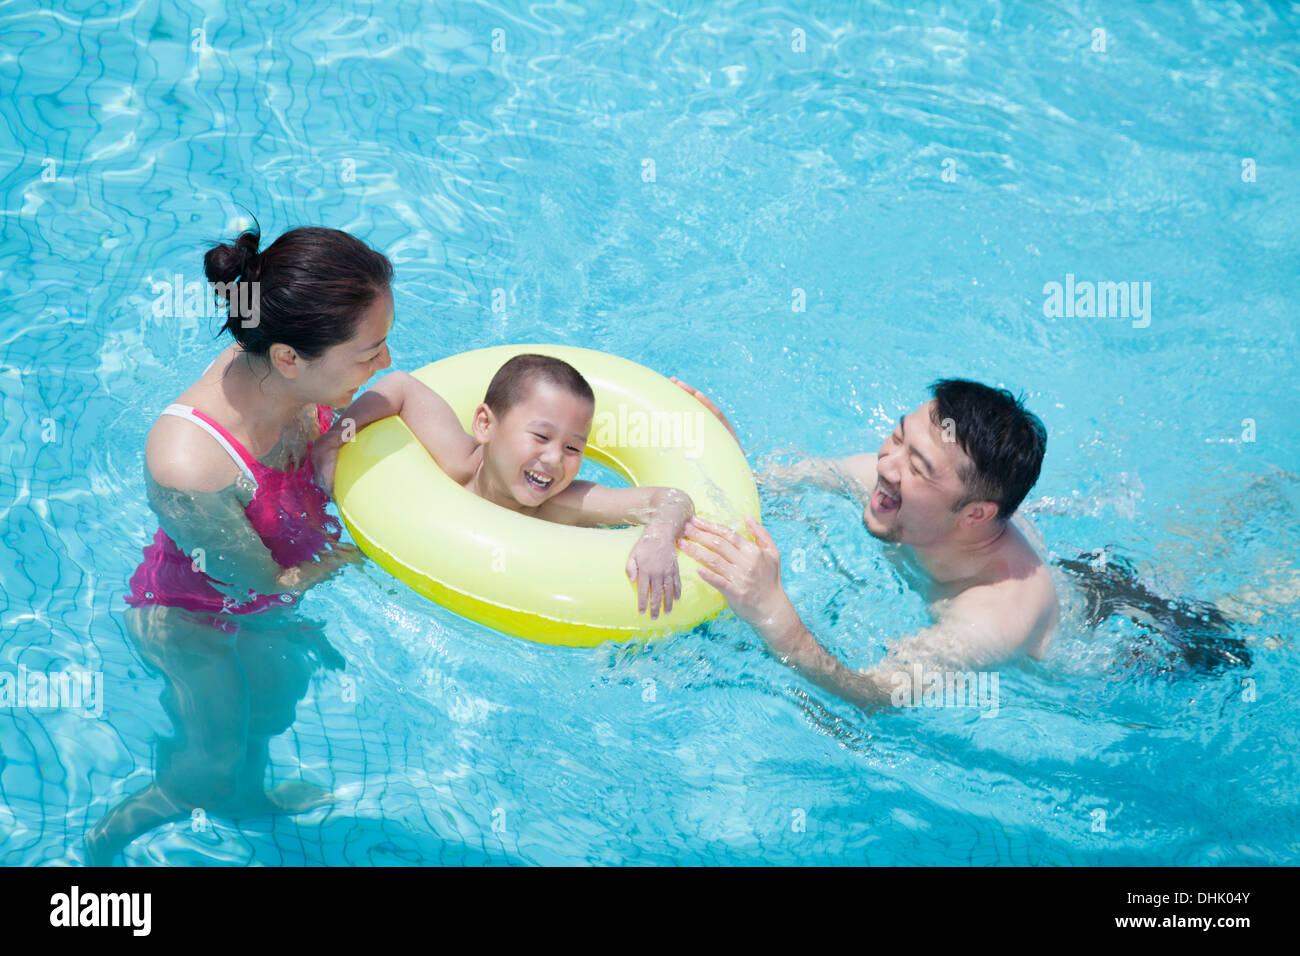 Smiling happy family dans la piscine avec leur fils dans un tube gonflable Banque D'Images